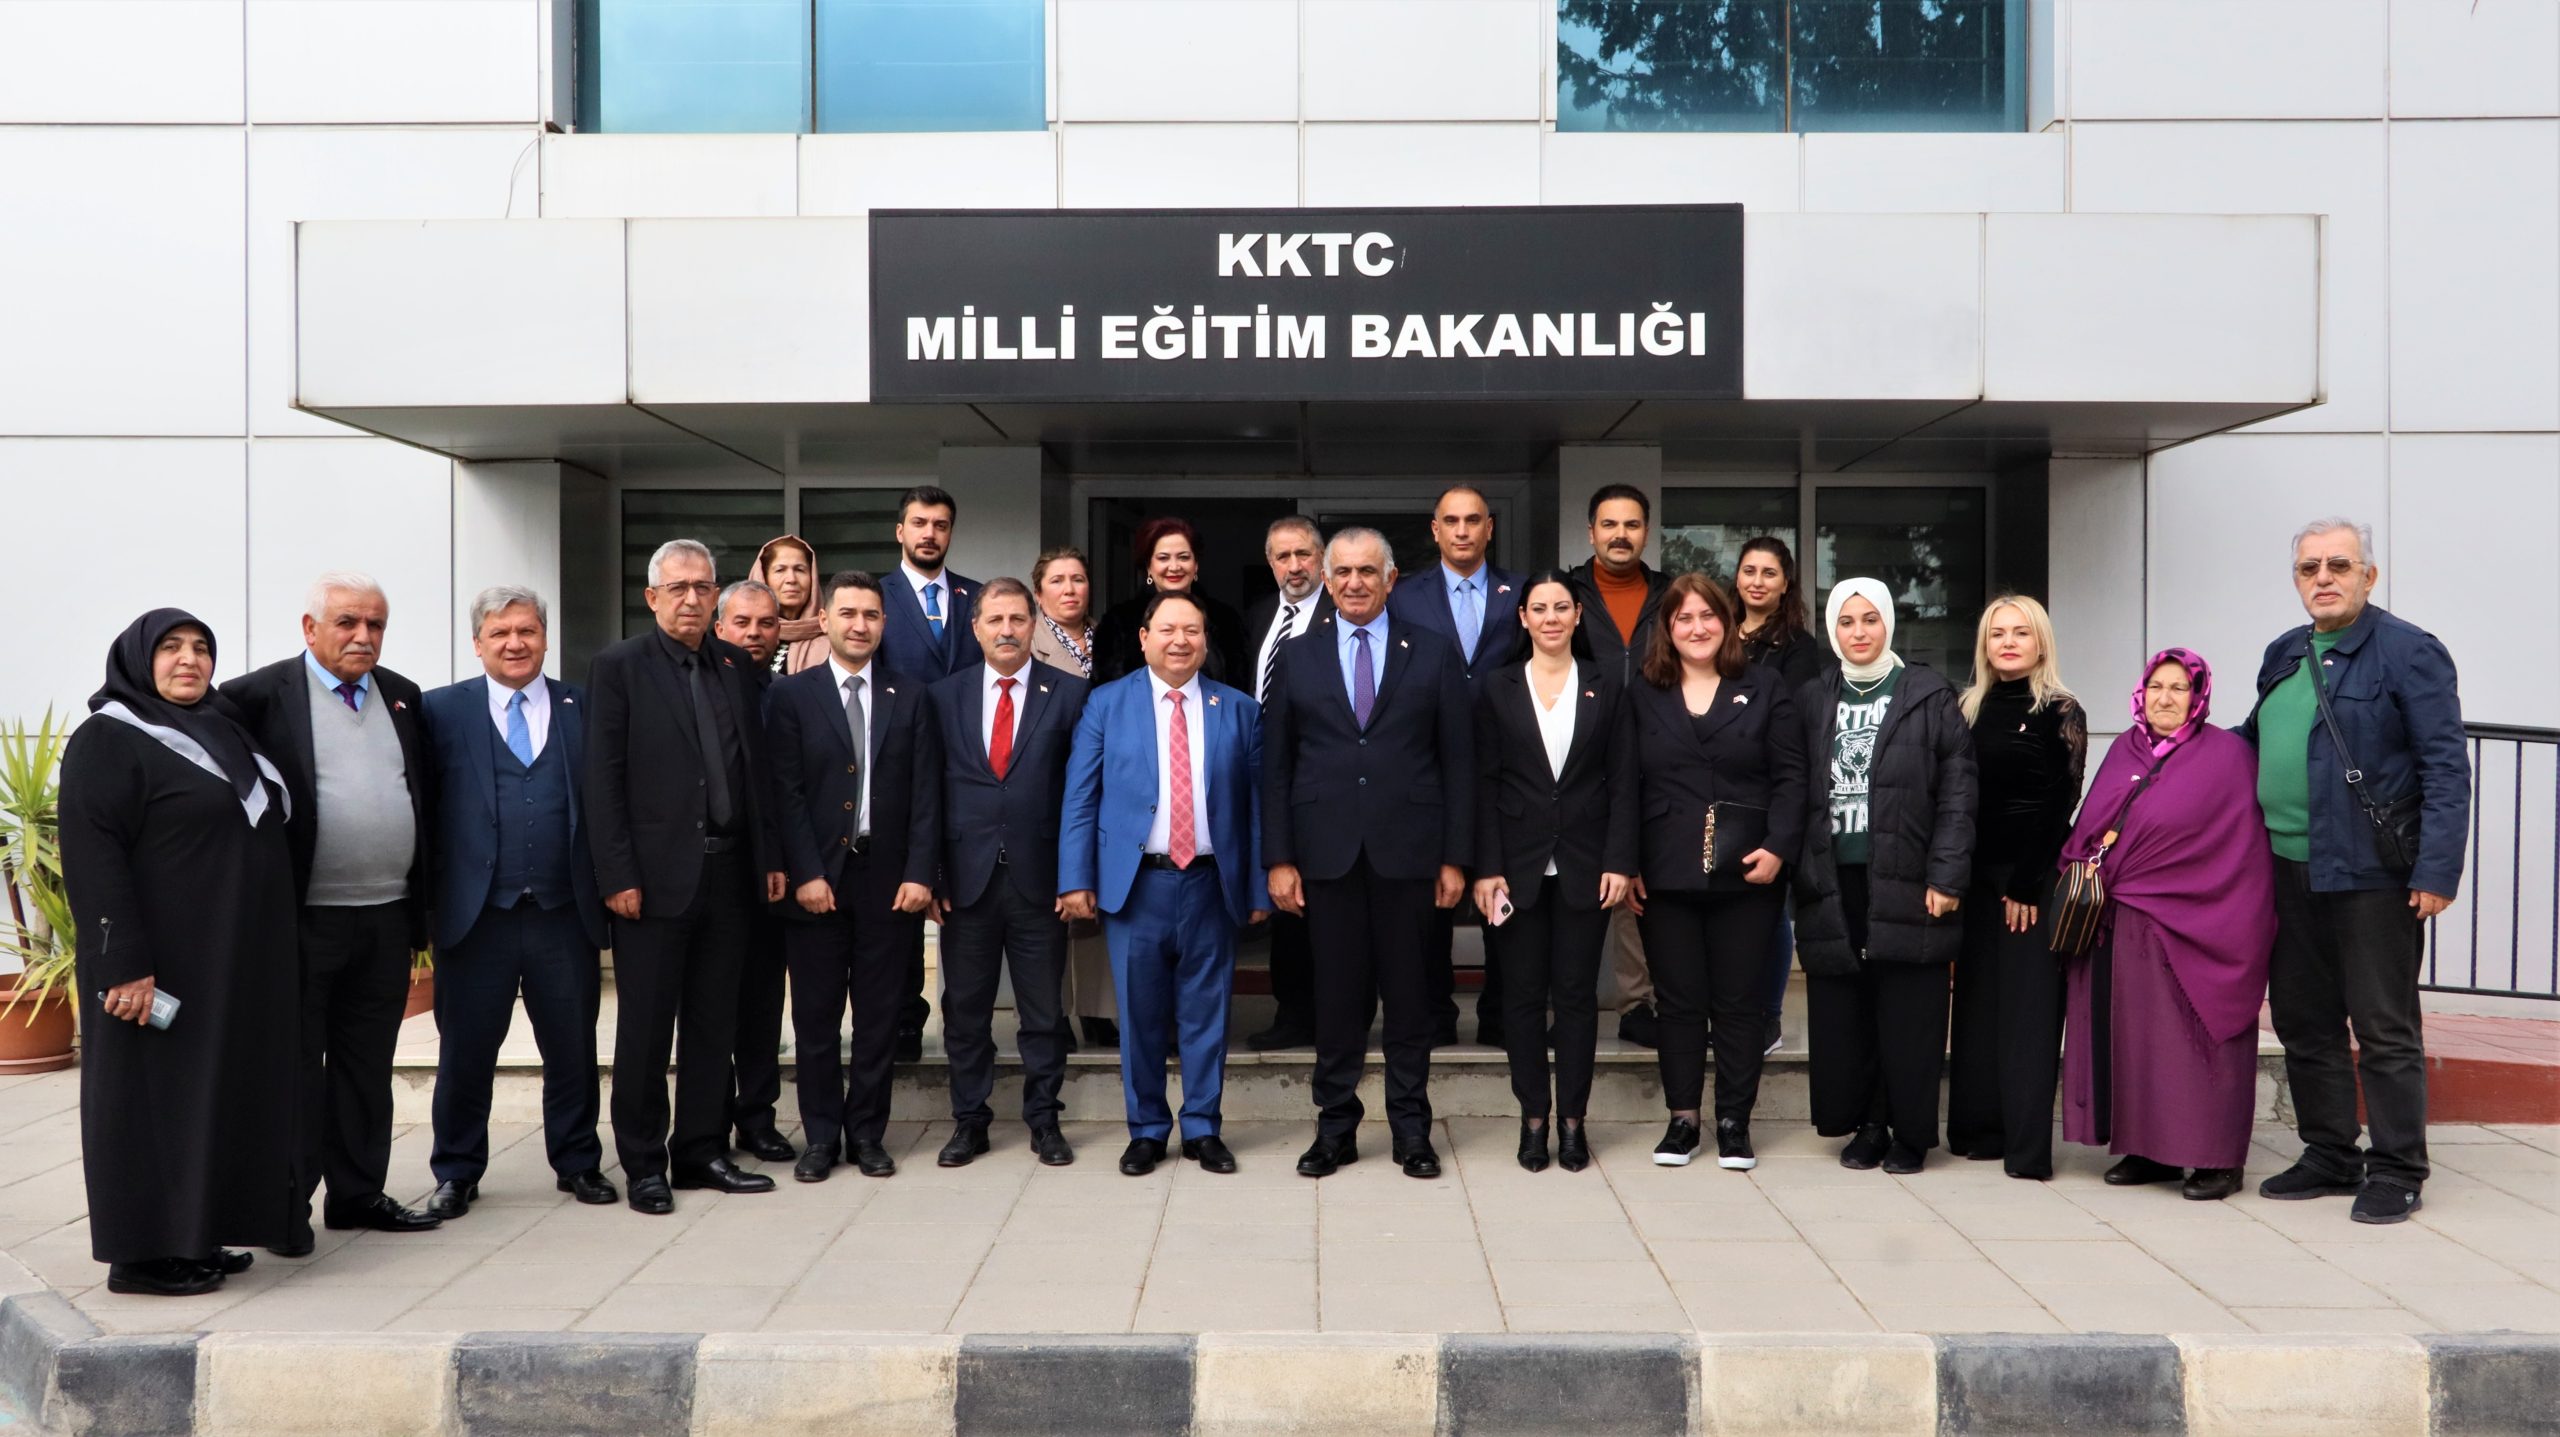 Milli Eğitim Bakanı Çavuşoğlu, Türkiye – Kıbrıs Türk Cumhuriyeti İş Birliği Cemiyeti Heyetini kabul etti